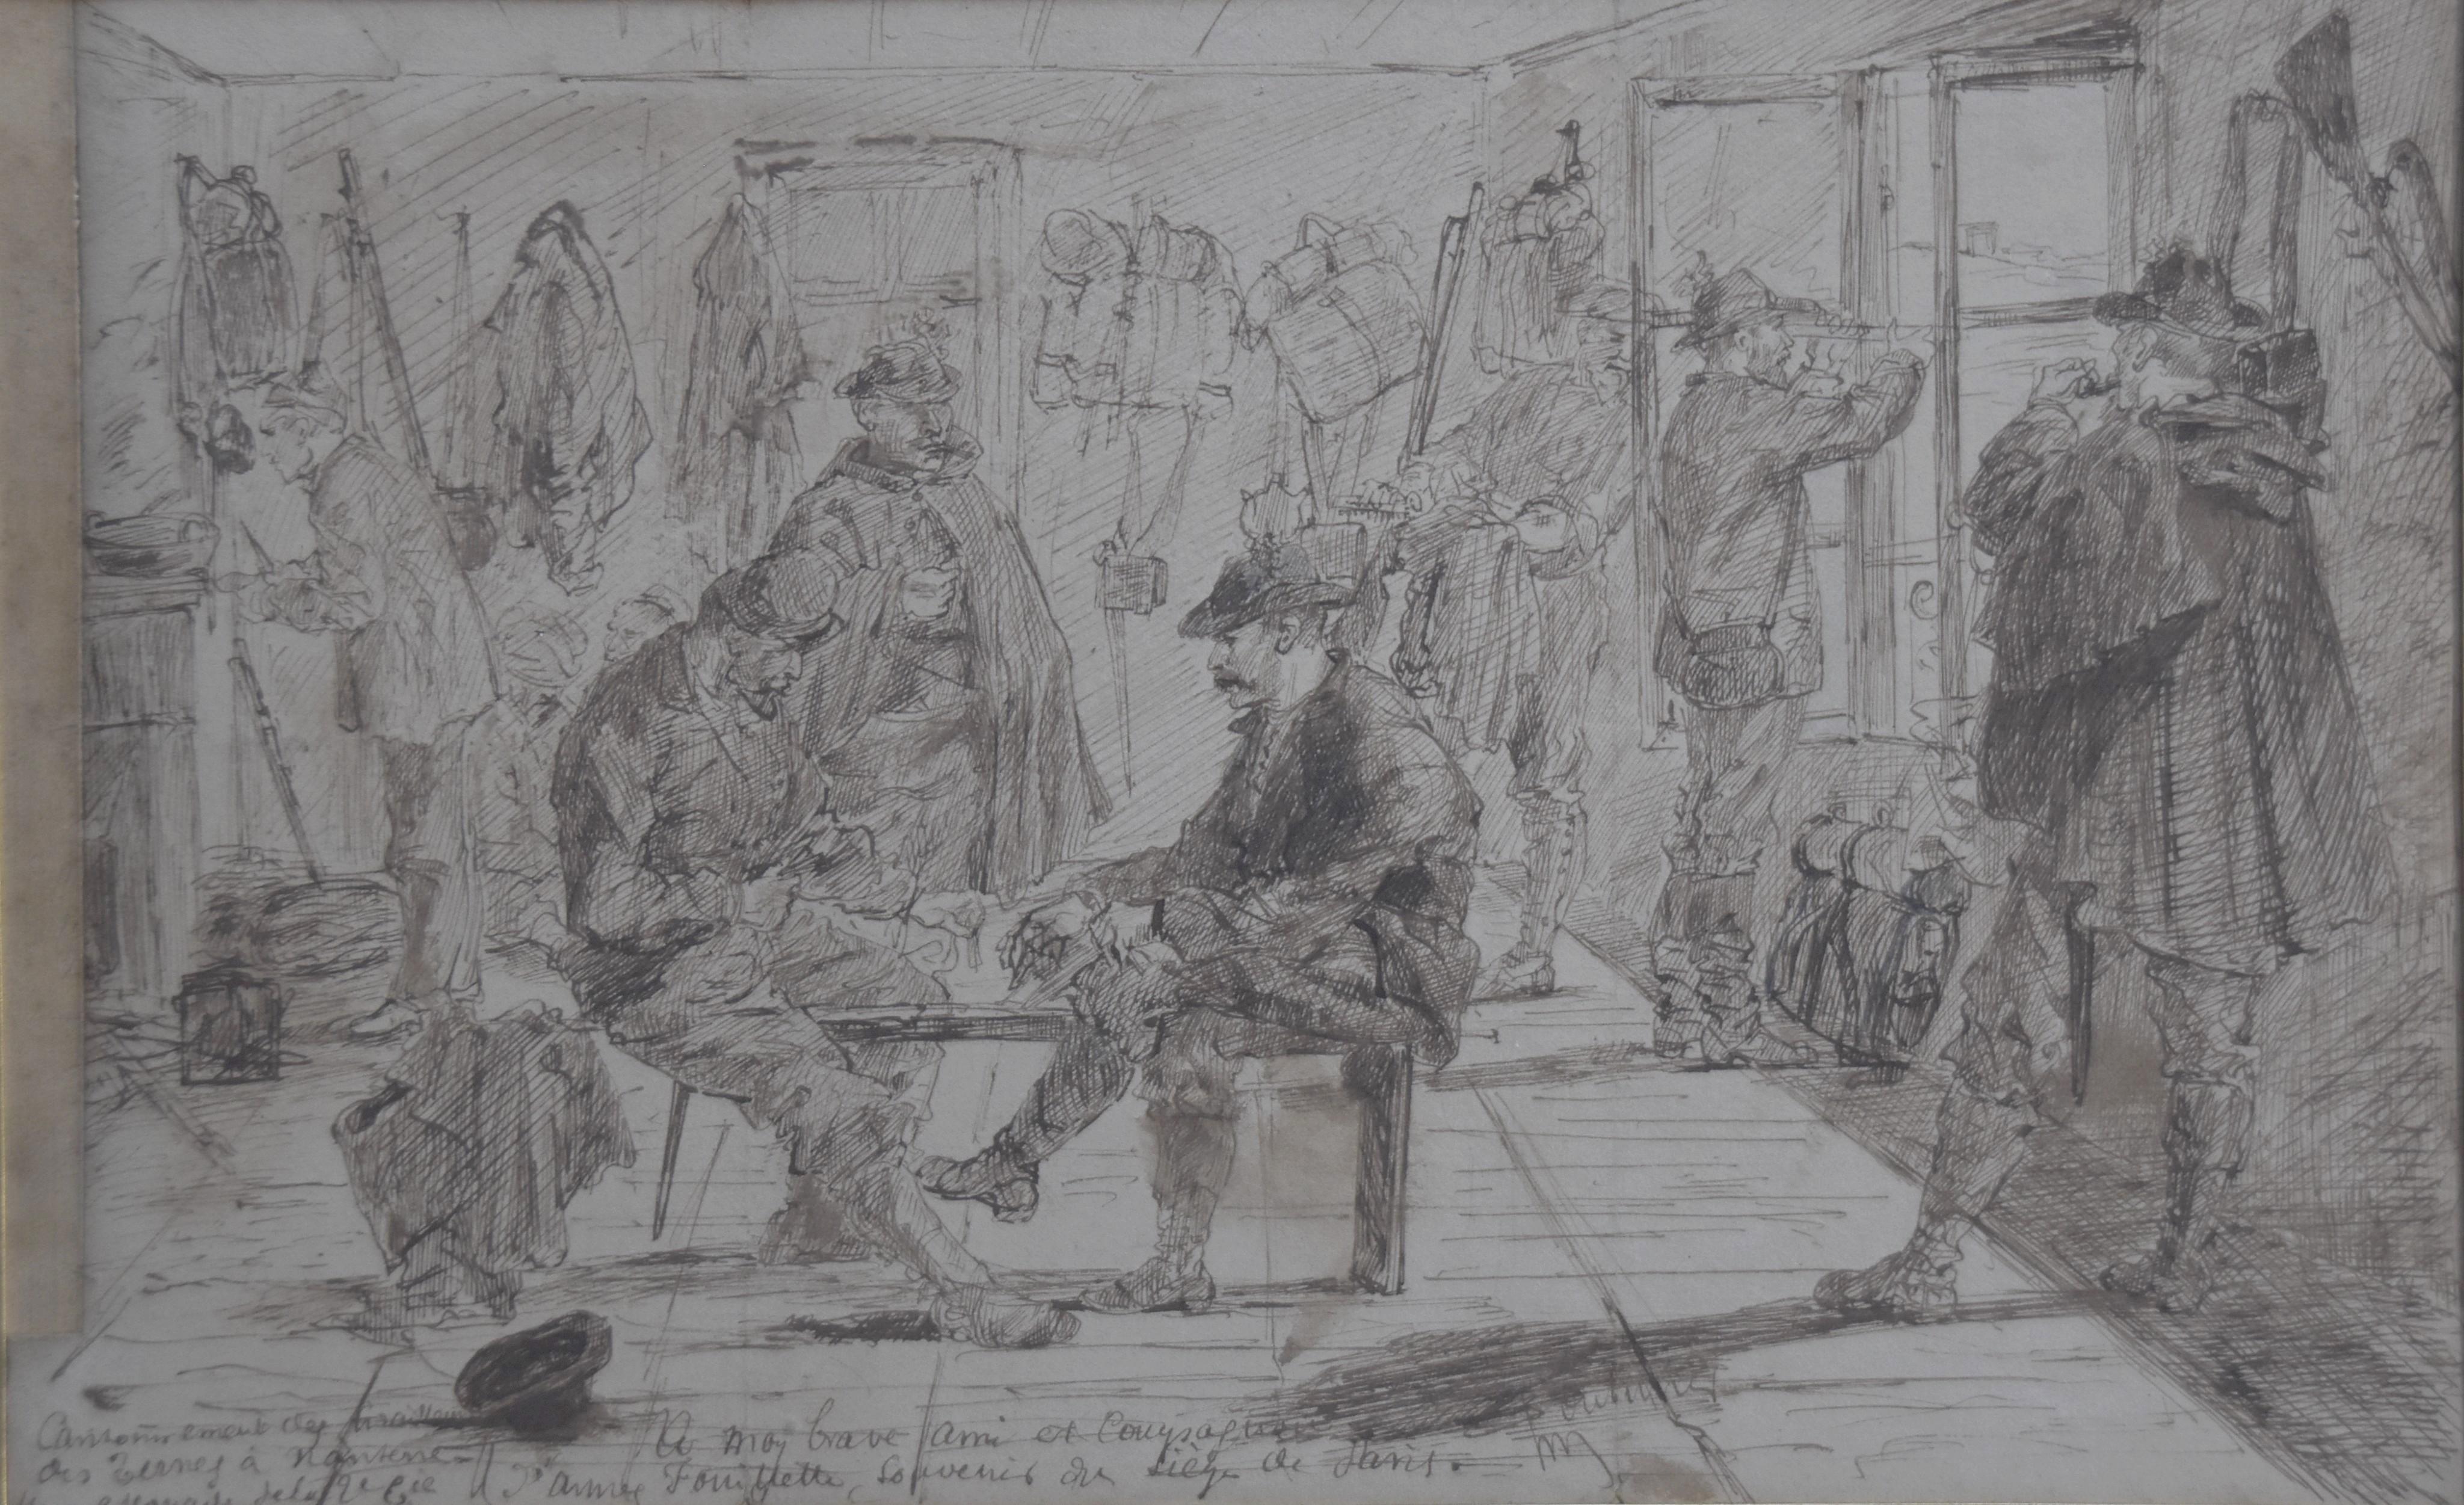 Episode des Deutsch-Französischen Krieges von 1870, ein Kanton mit Soldaten, Zeichnung